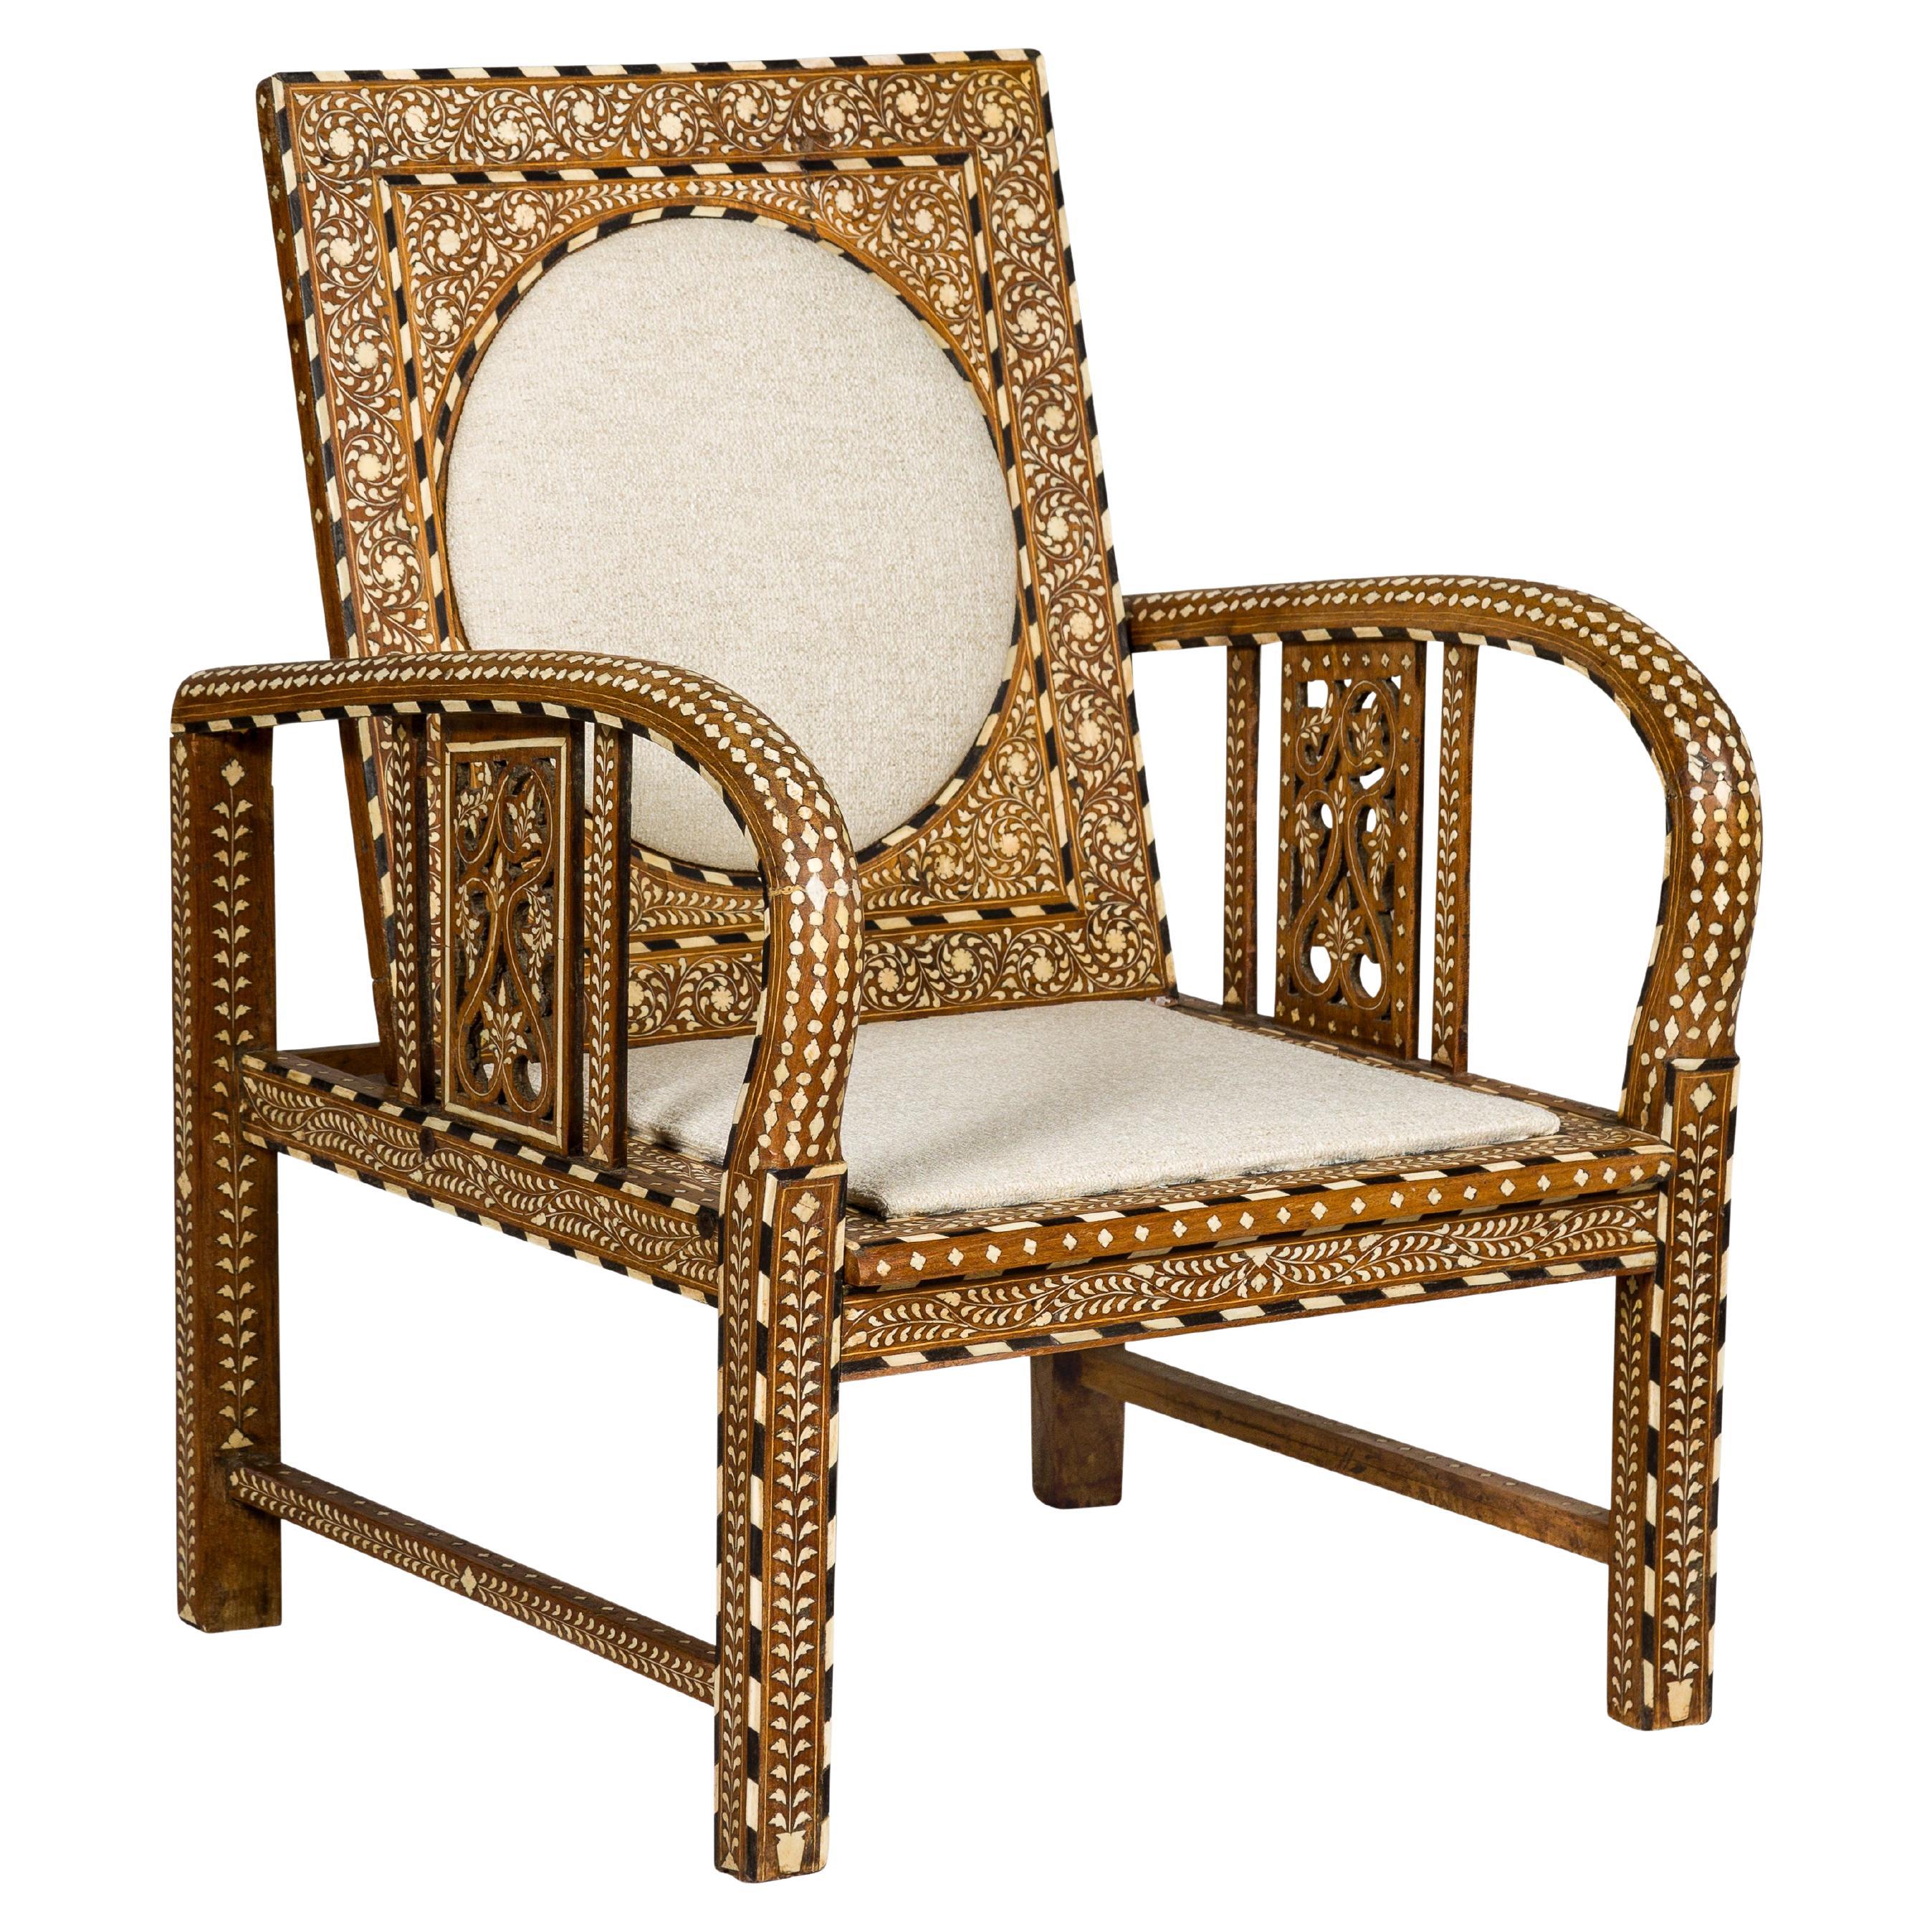 Sessel mit Knochenintarsien im anglo-indischen Stil mit faltbarer Rückenlehne und Loop-Armen